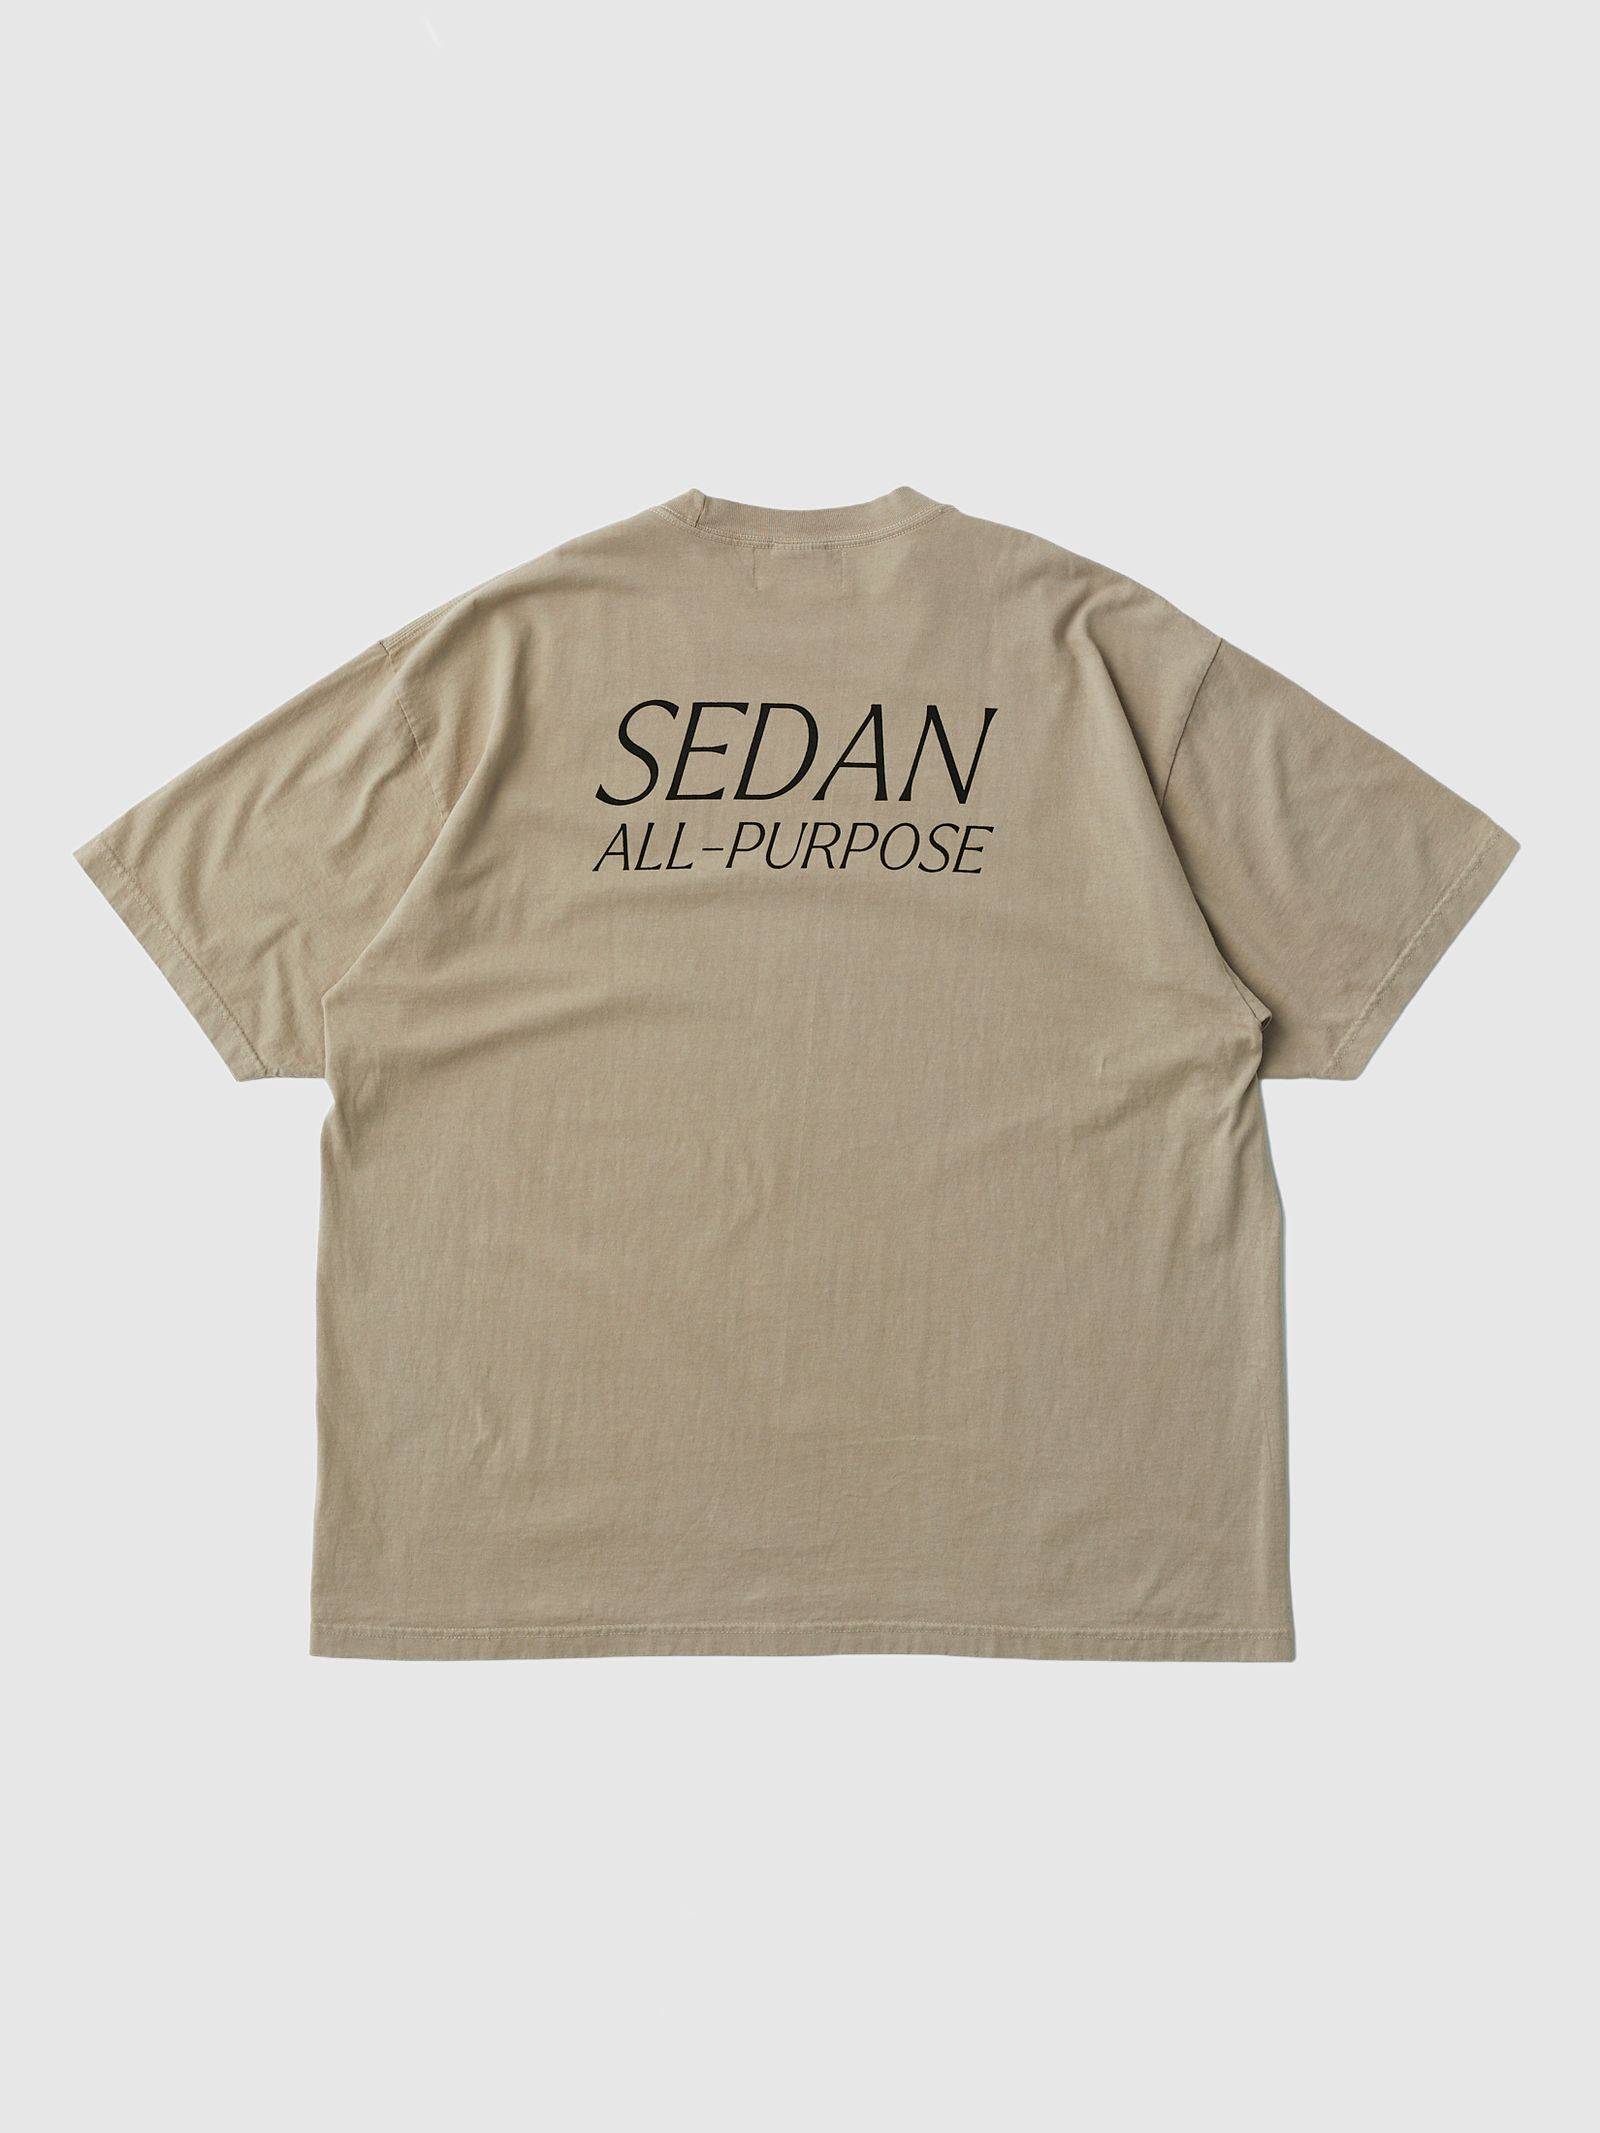 セダンオールパーパス SS24 Garment Dyed S/S Tee(SD24S-CT06)Sand - S